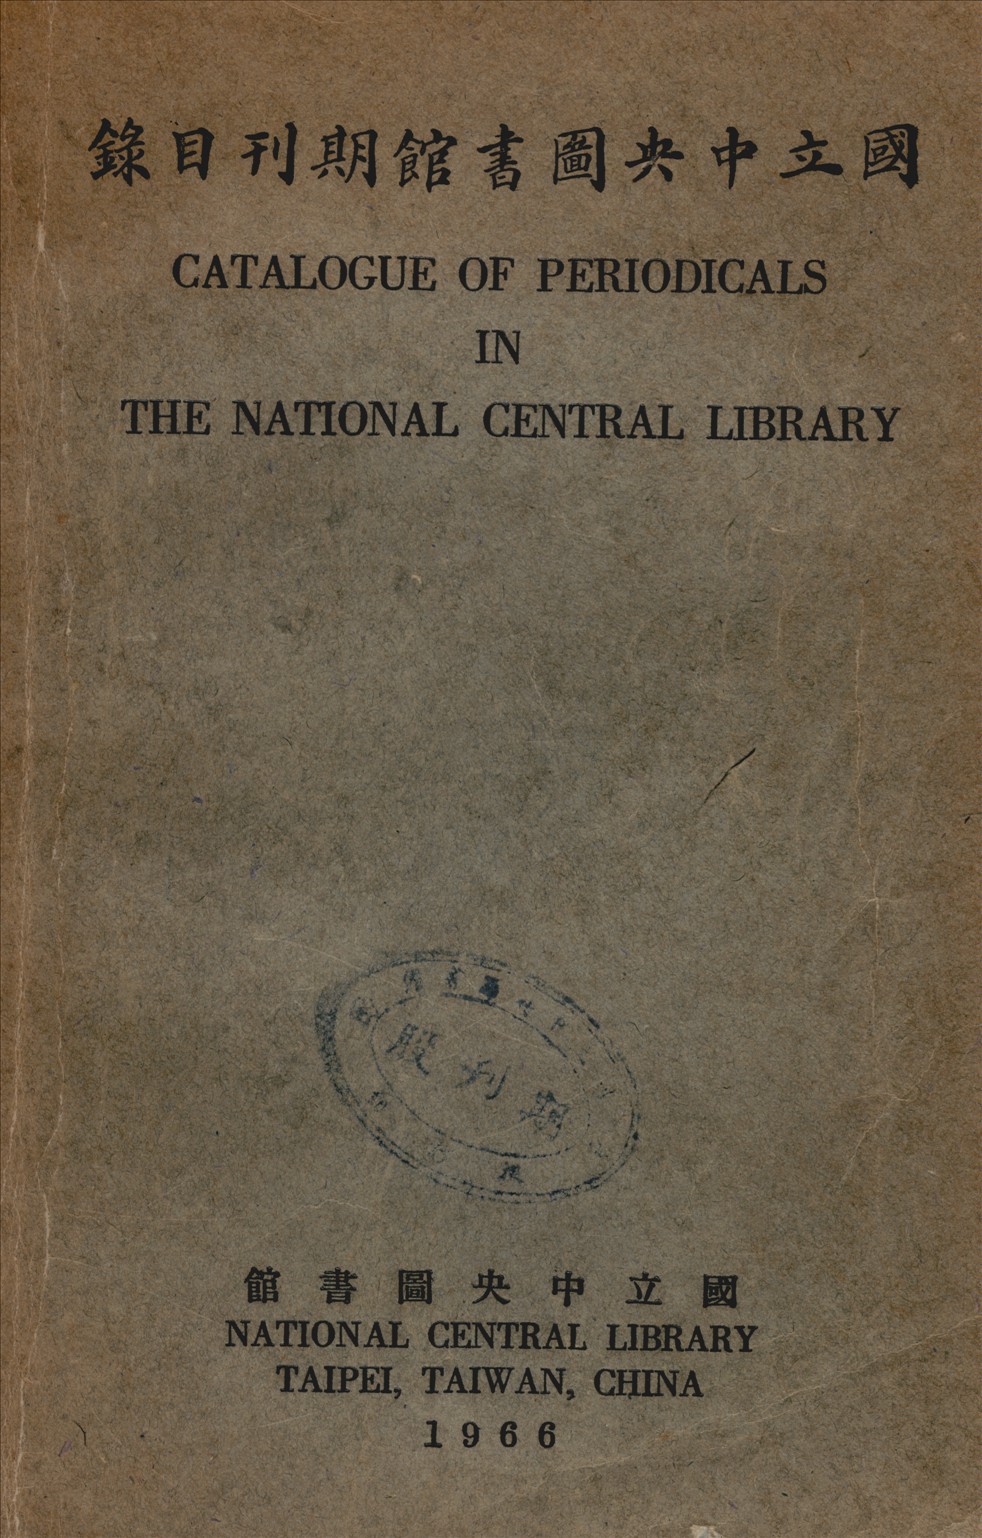 國立中央圖書館期刋目錄